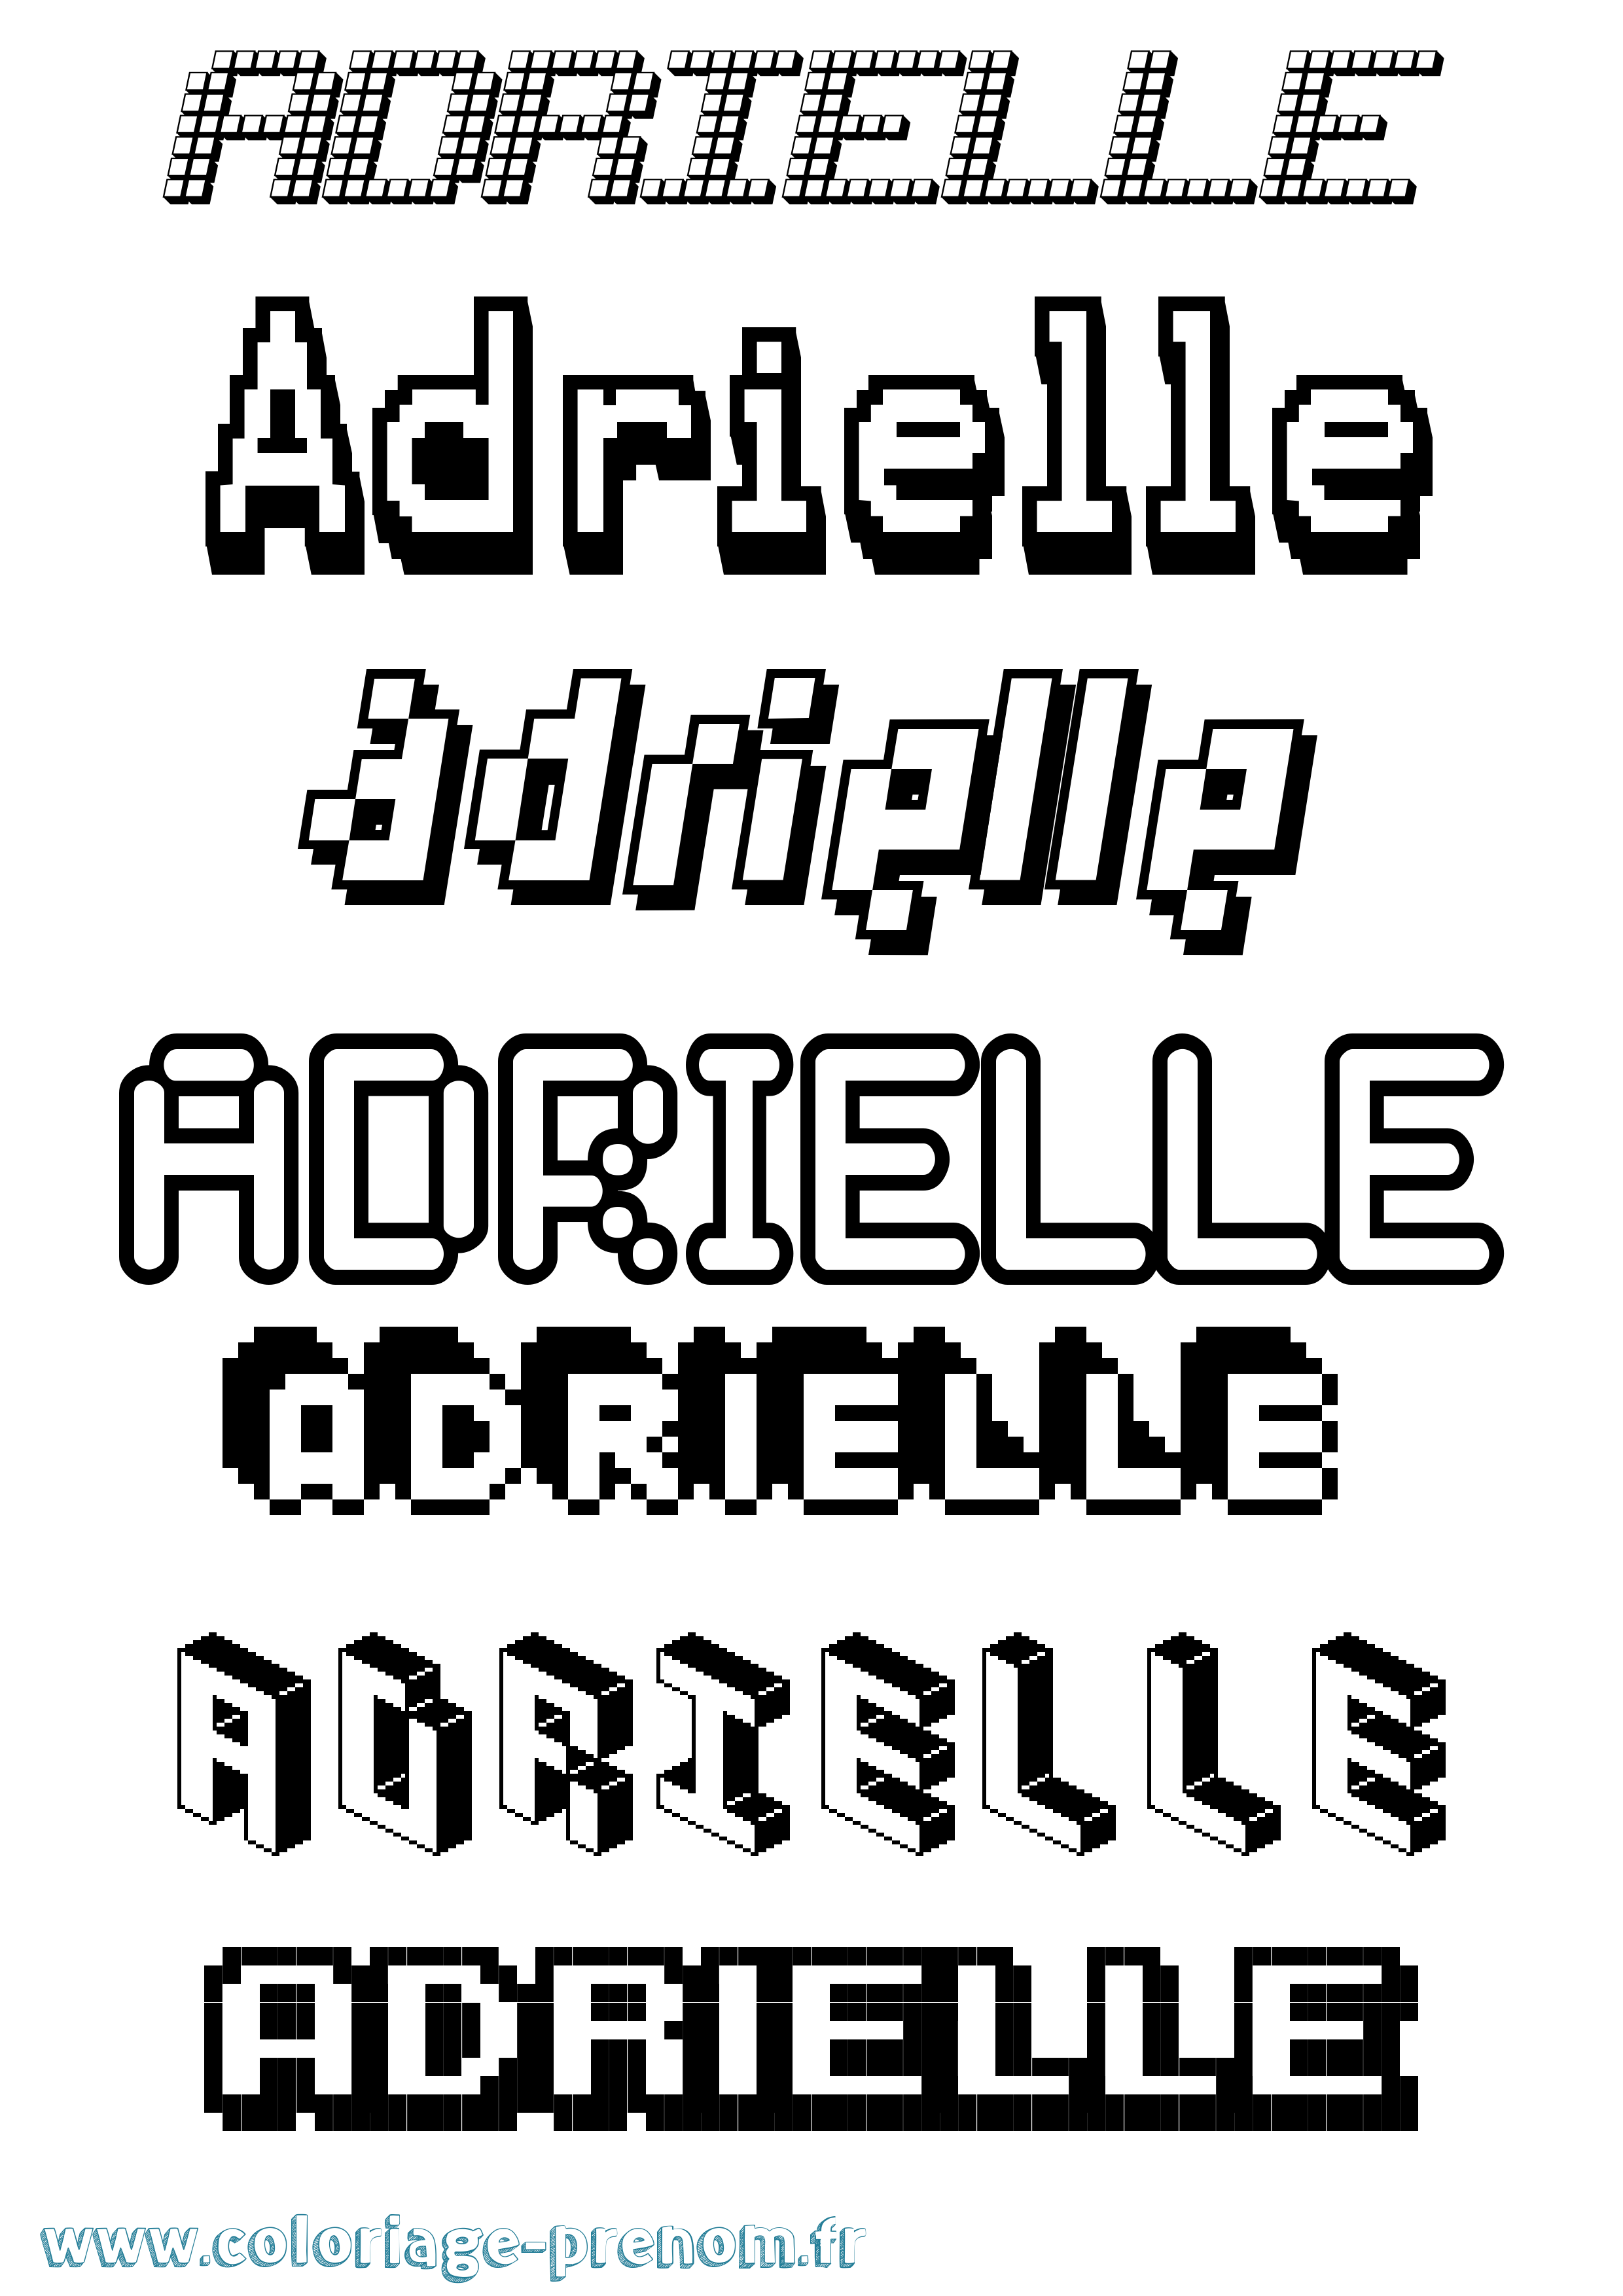 Coloriage prénom Adrielle Pixel